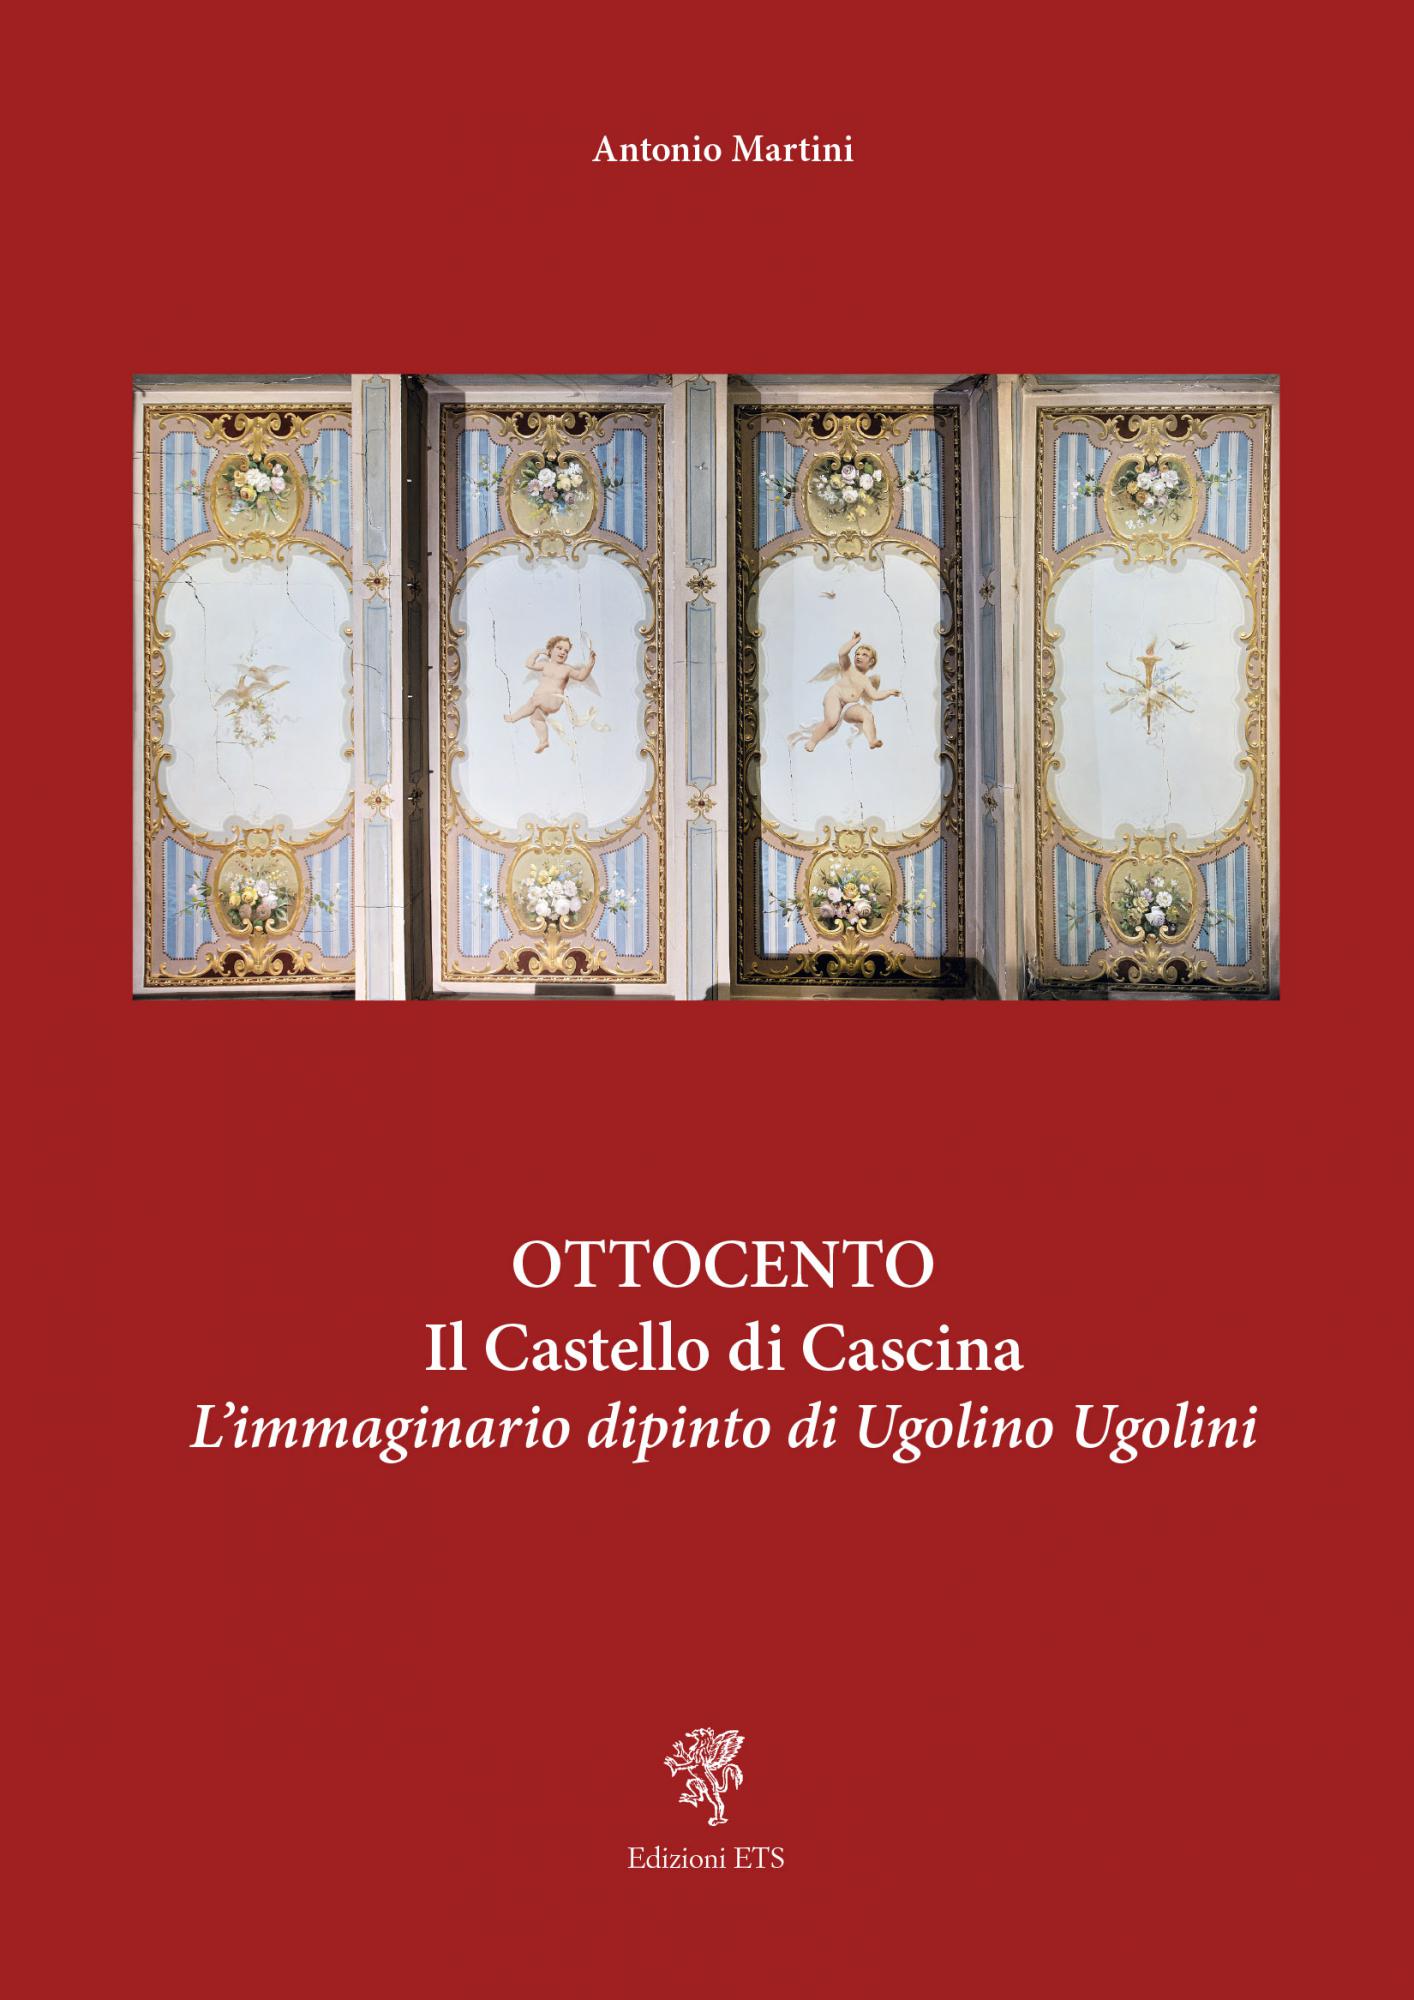 Ottocento<br />Il Castello di Cascina.L'immaginario dipinto di Ugolino Ugolini